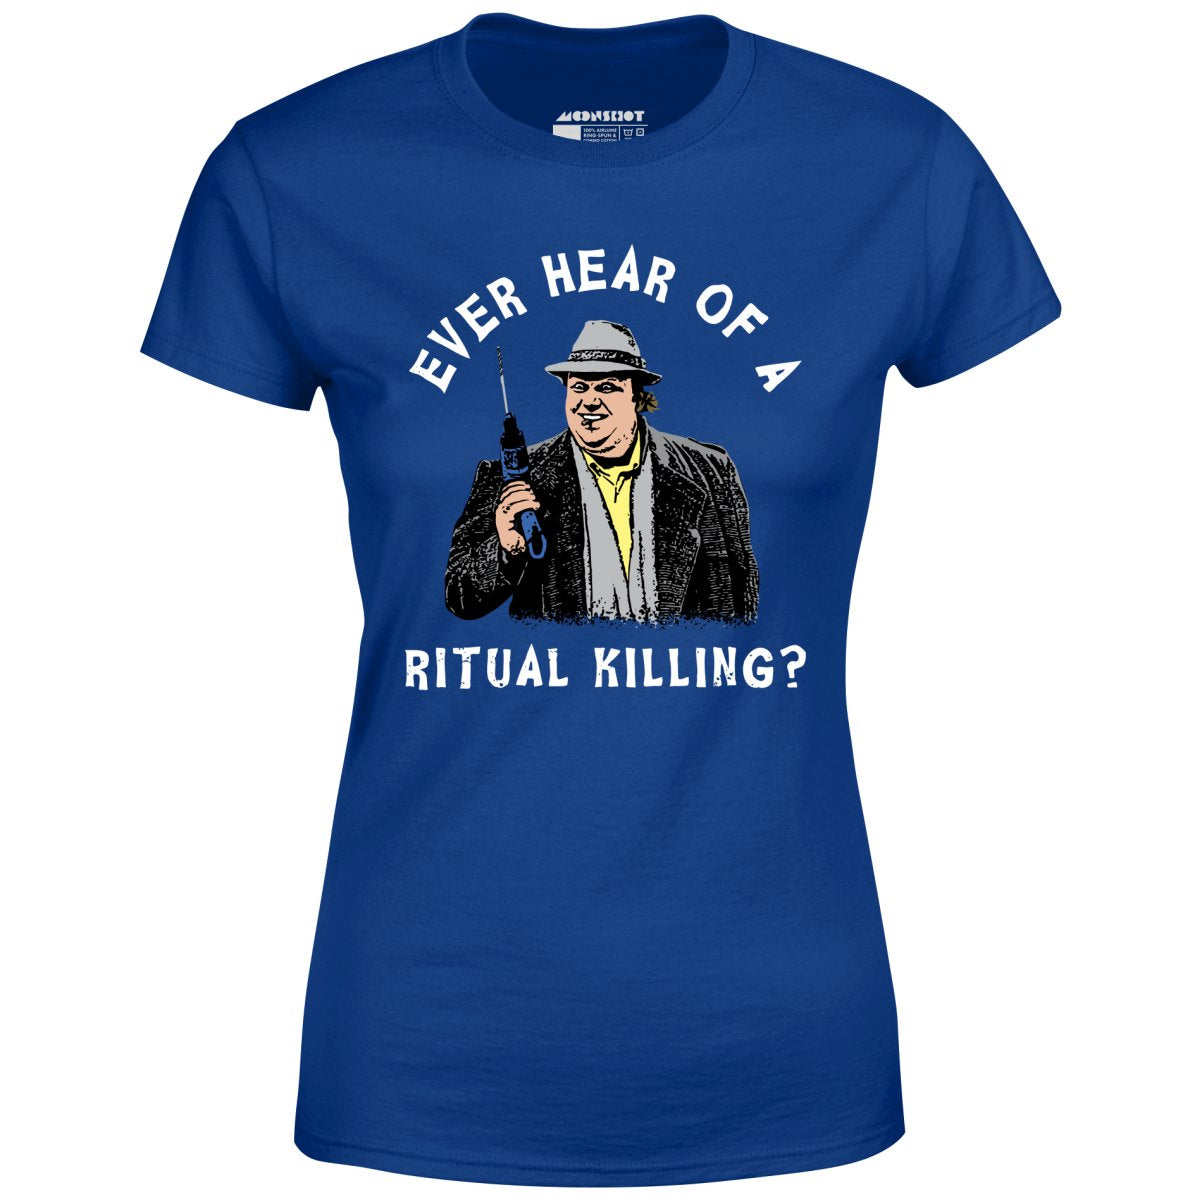 Ever Hear of a Ritual Killing? - Women's T-Shirt